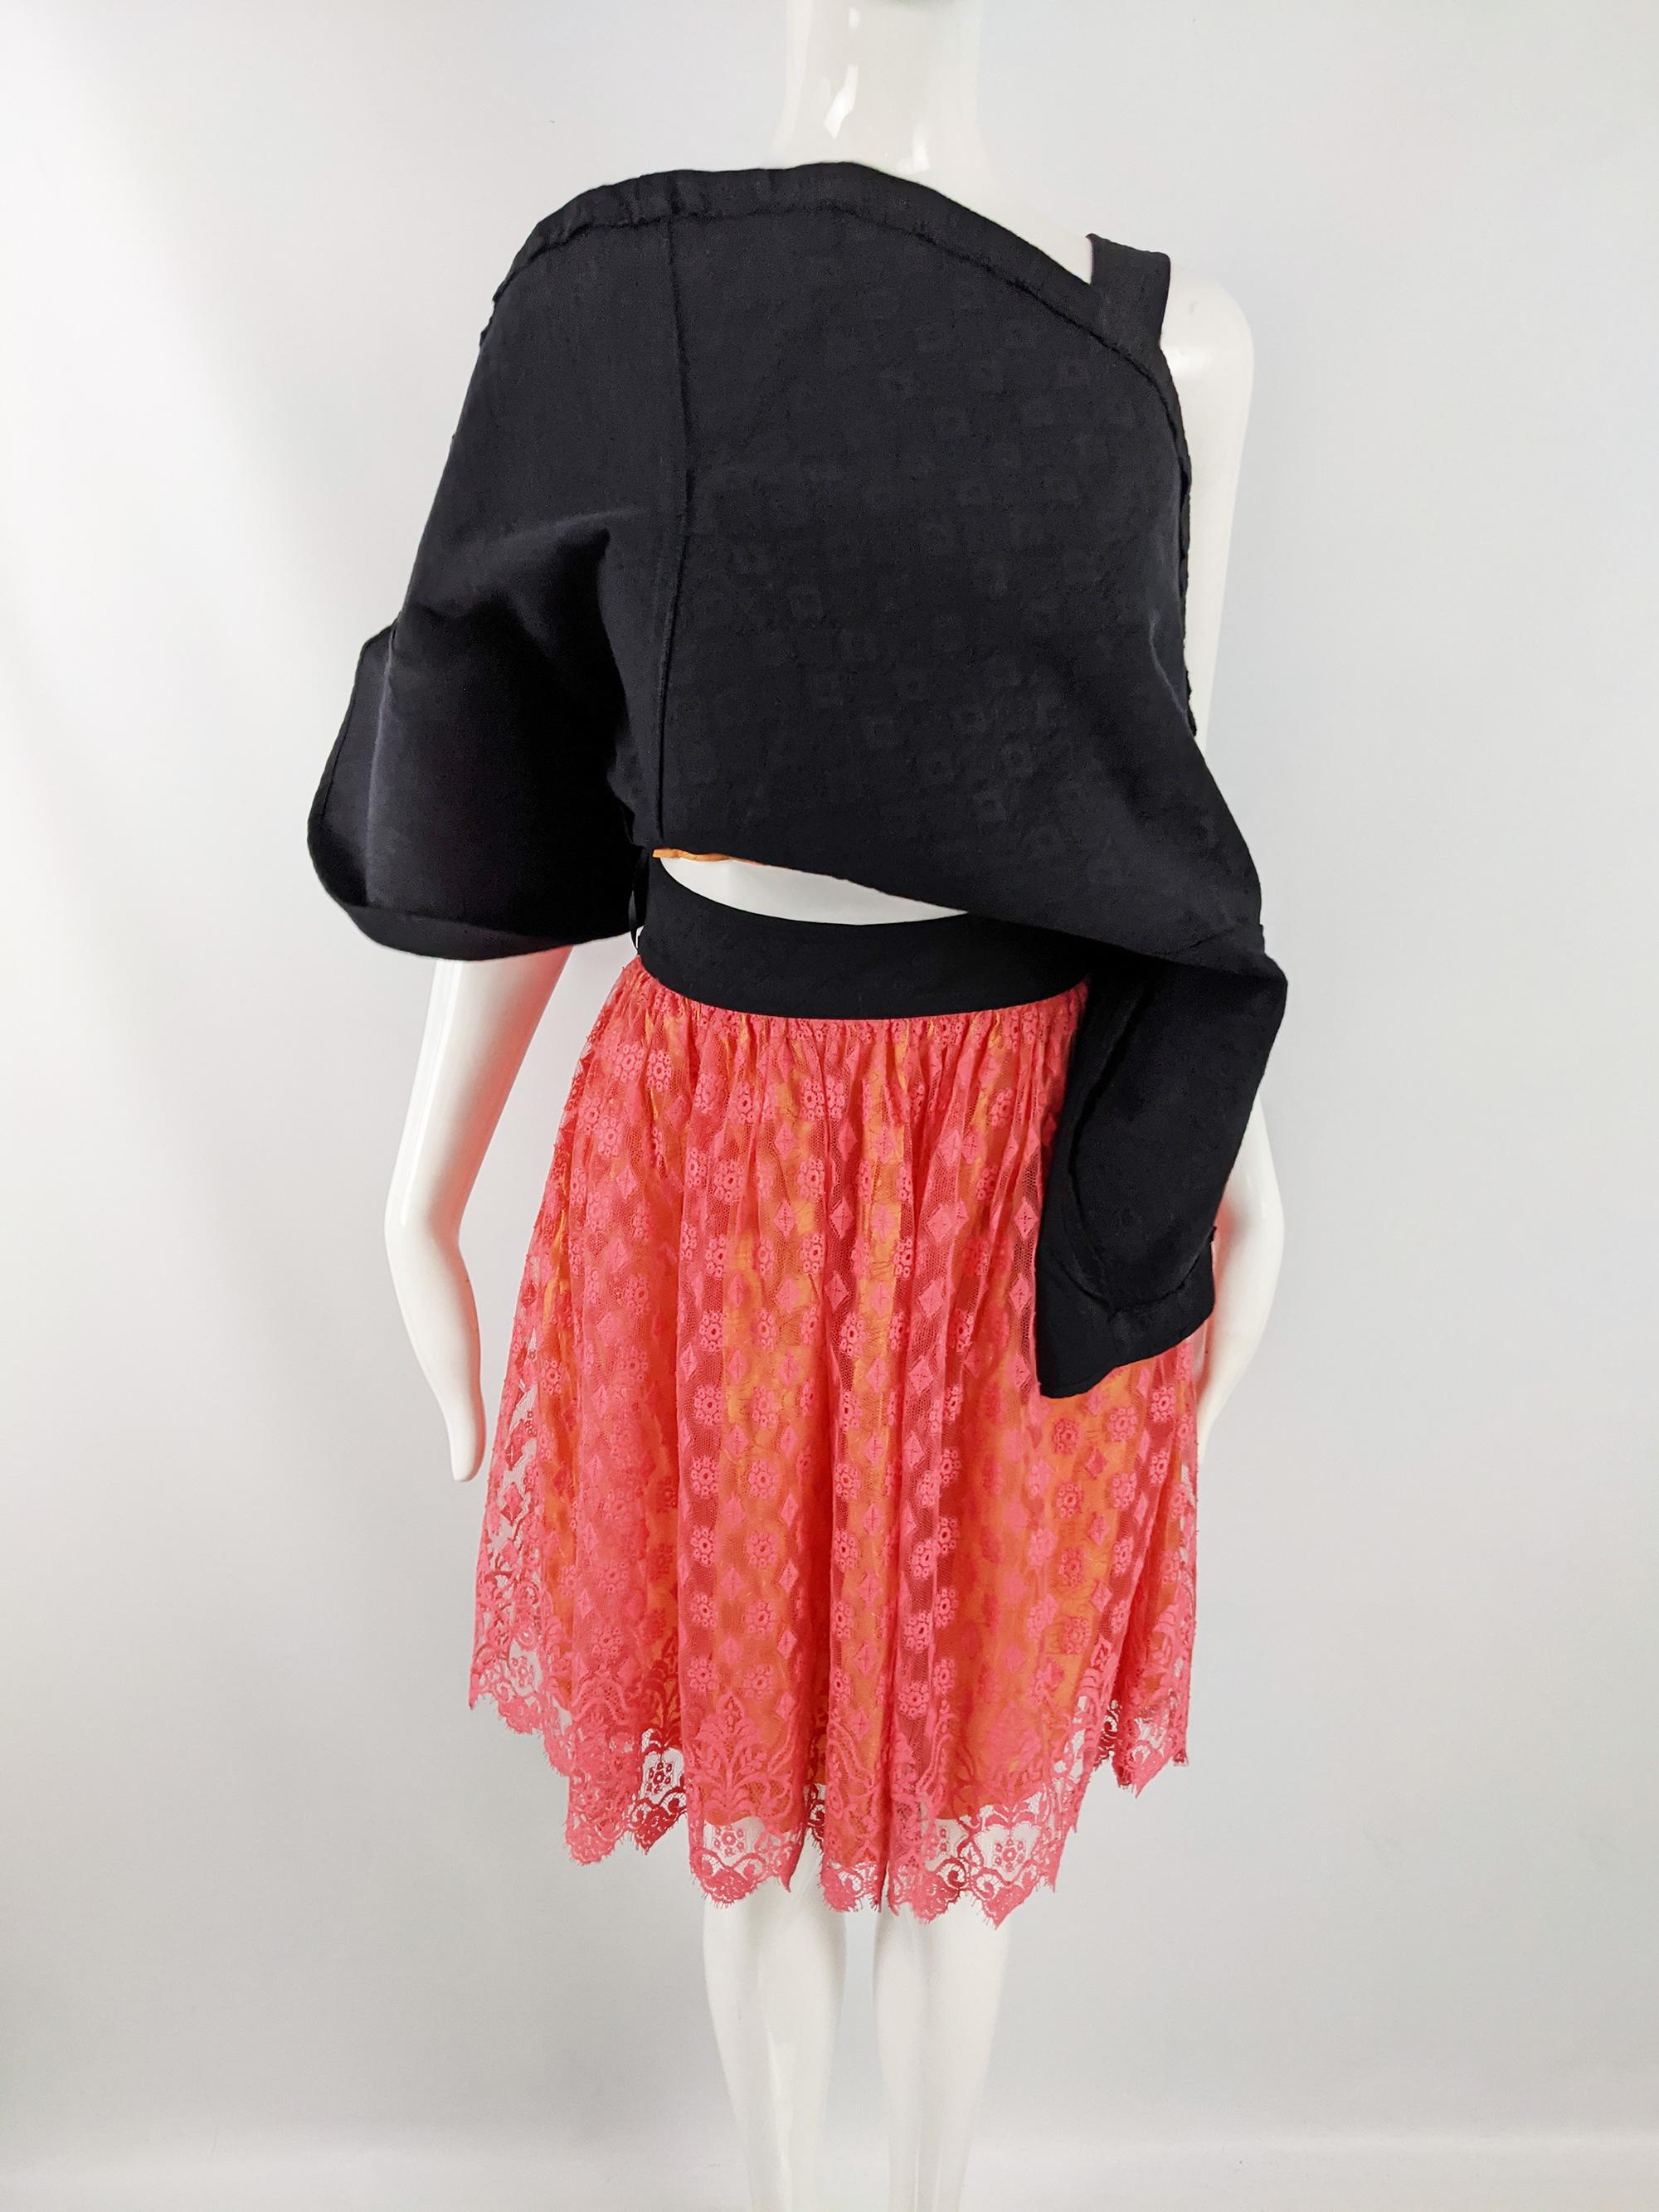 Christian Lacroix Bazar Vintage Black Apron & Coral Lace Dress, 1990s For Sale 3